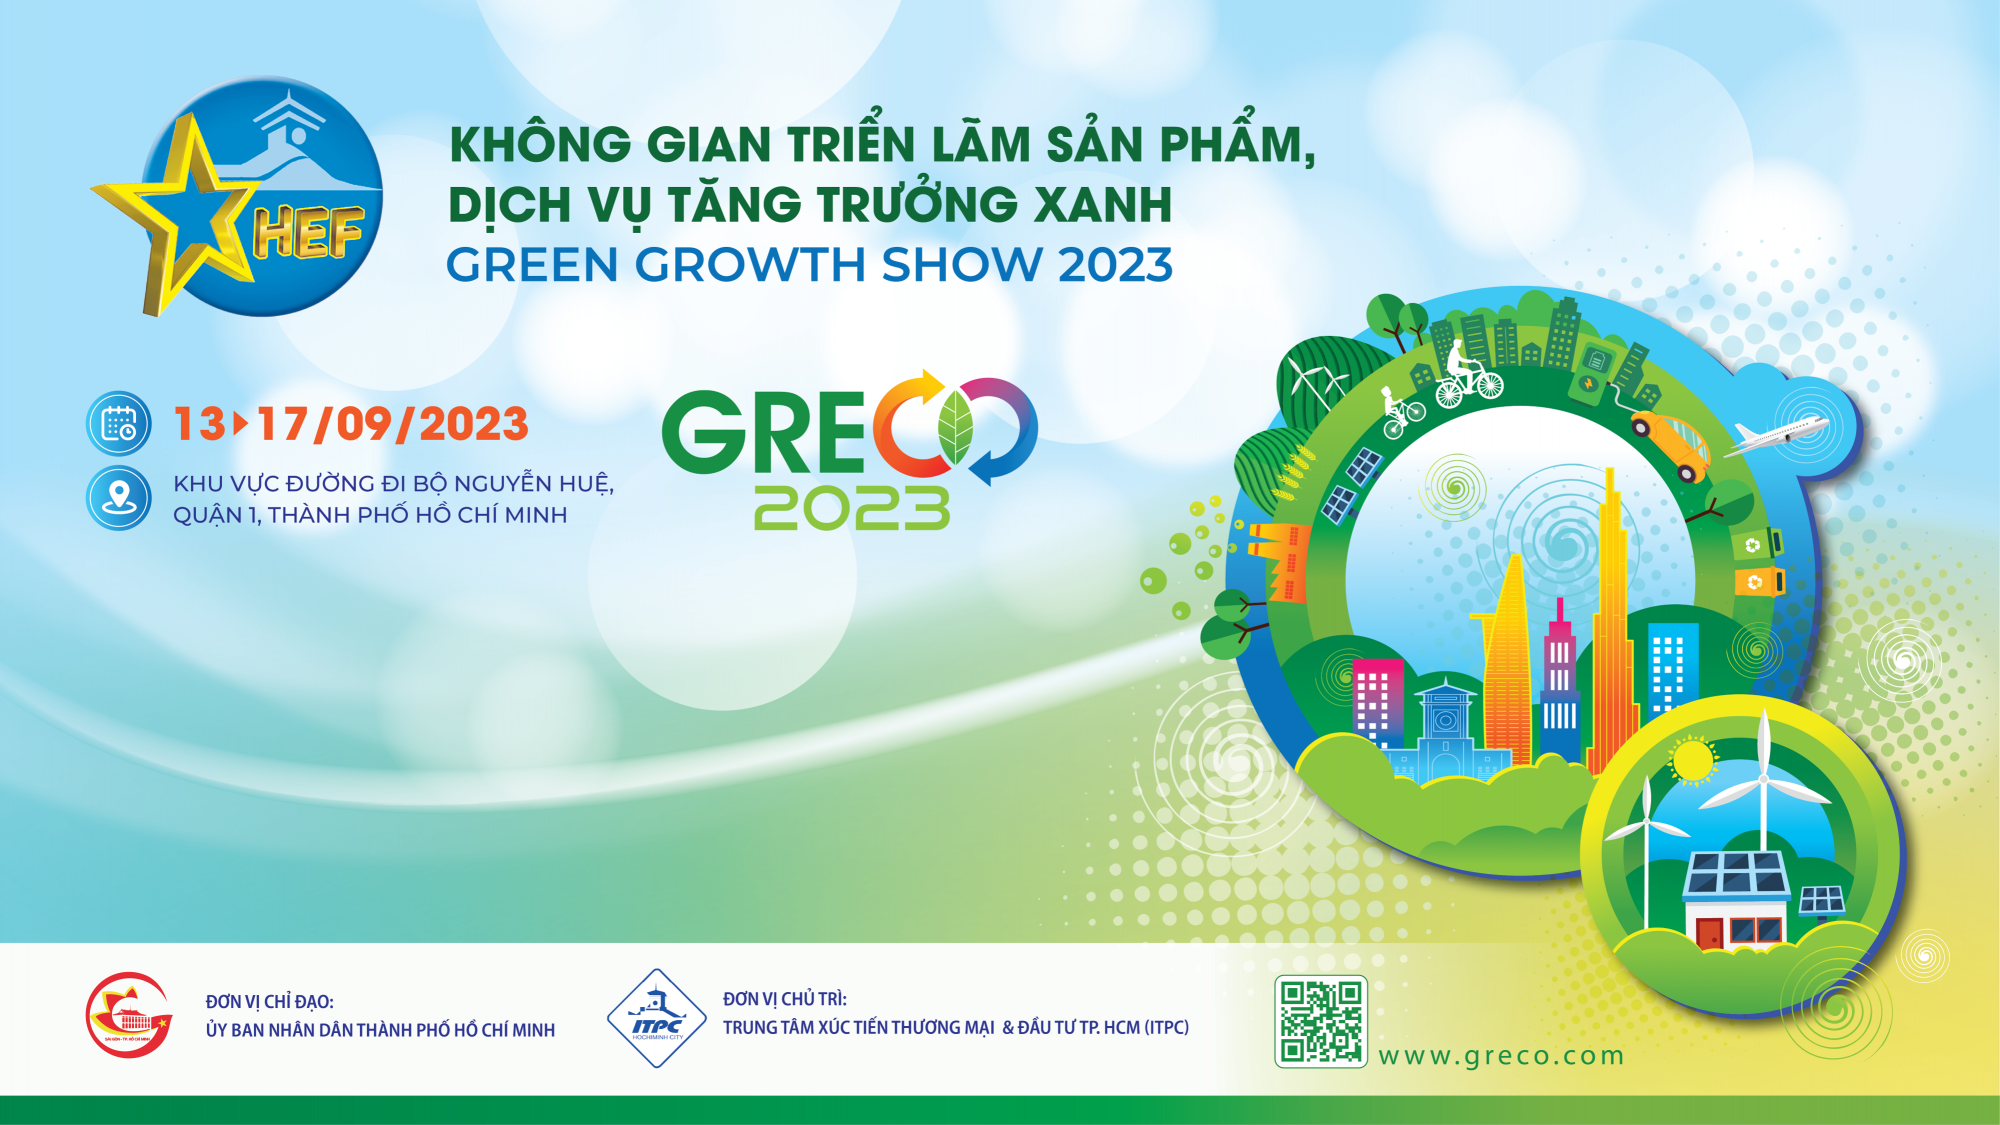 Greco - Triễn lãm sản phẩm, dịch vụ tăng trưởng xanh 2023